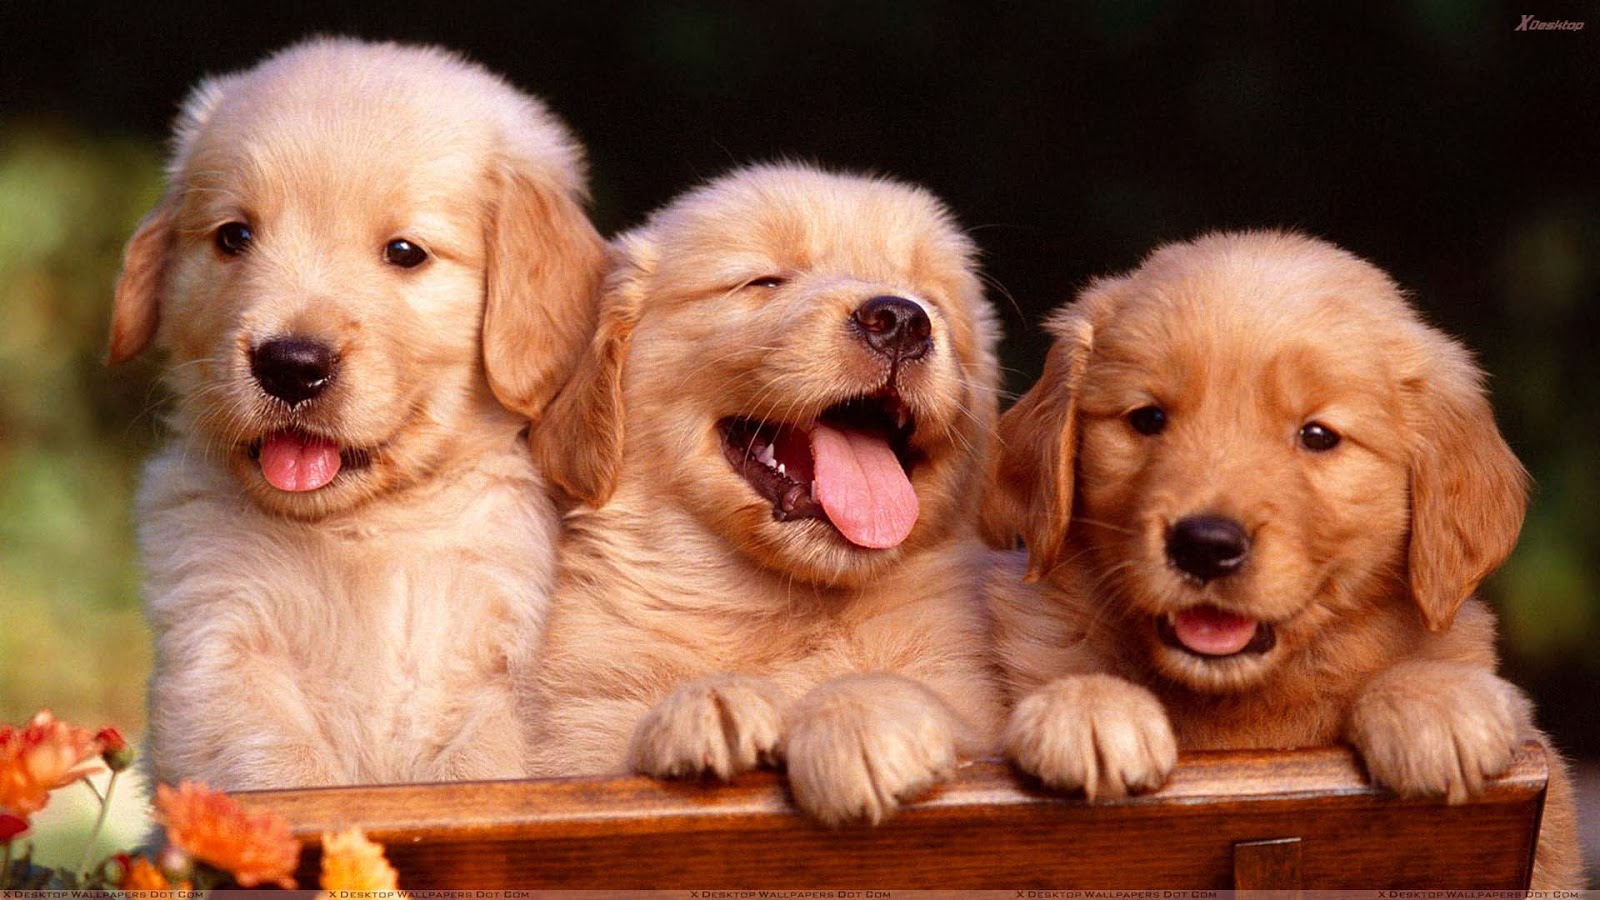 Friends Forever, Golden Retriever Puppies - Golden Retriever Puppy Hd - HD Wallpaper 